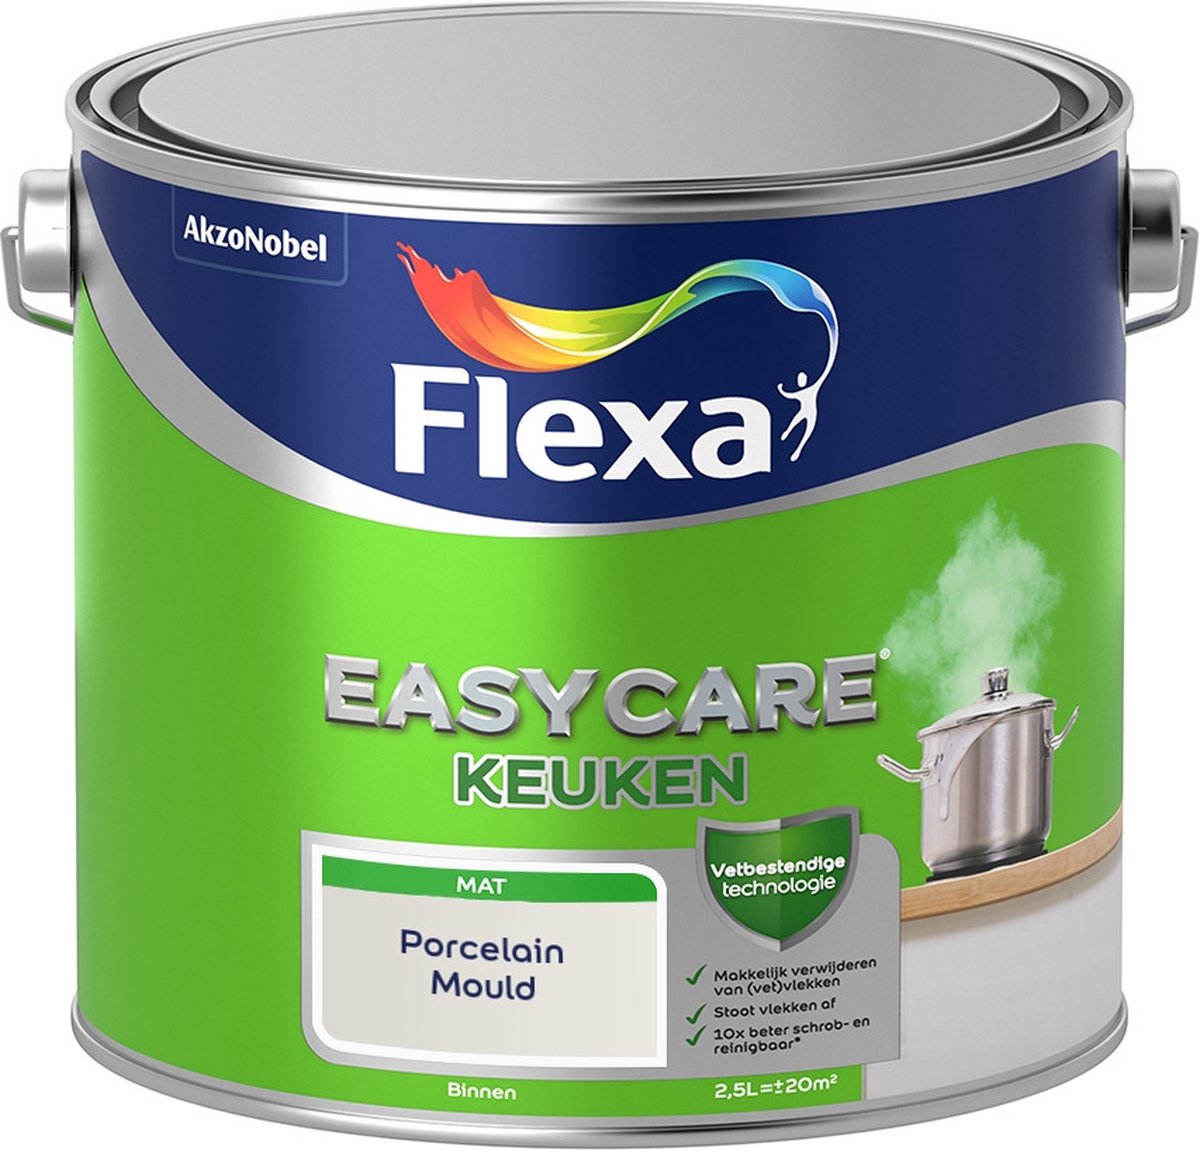 Flexa Easycare Muurverf - Keuken - Mat - Mengkleur - Porcelain Mould - 2,5 liter